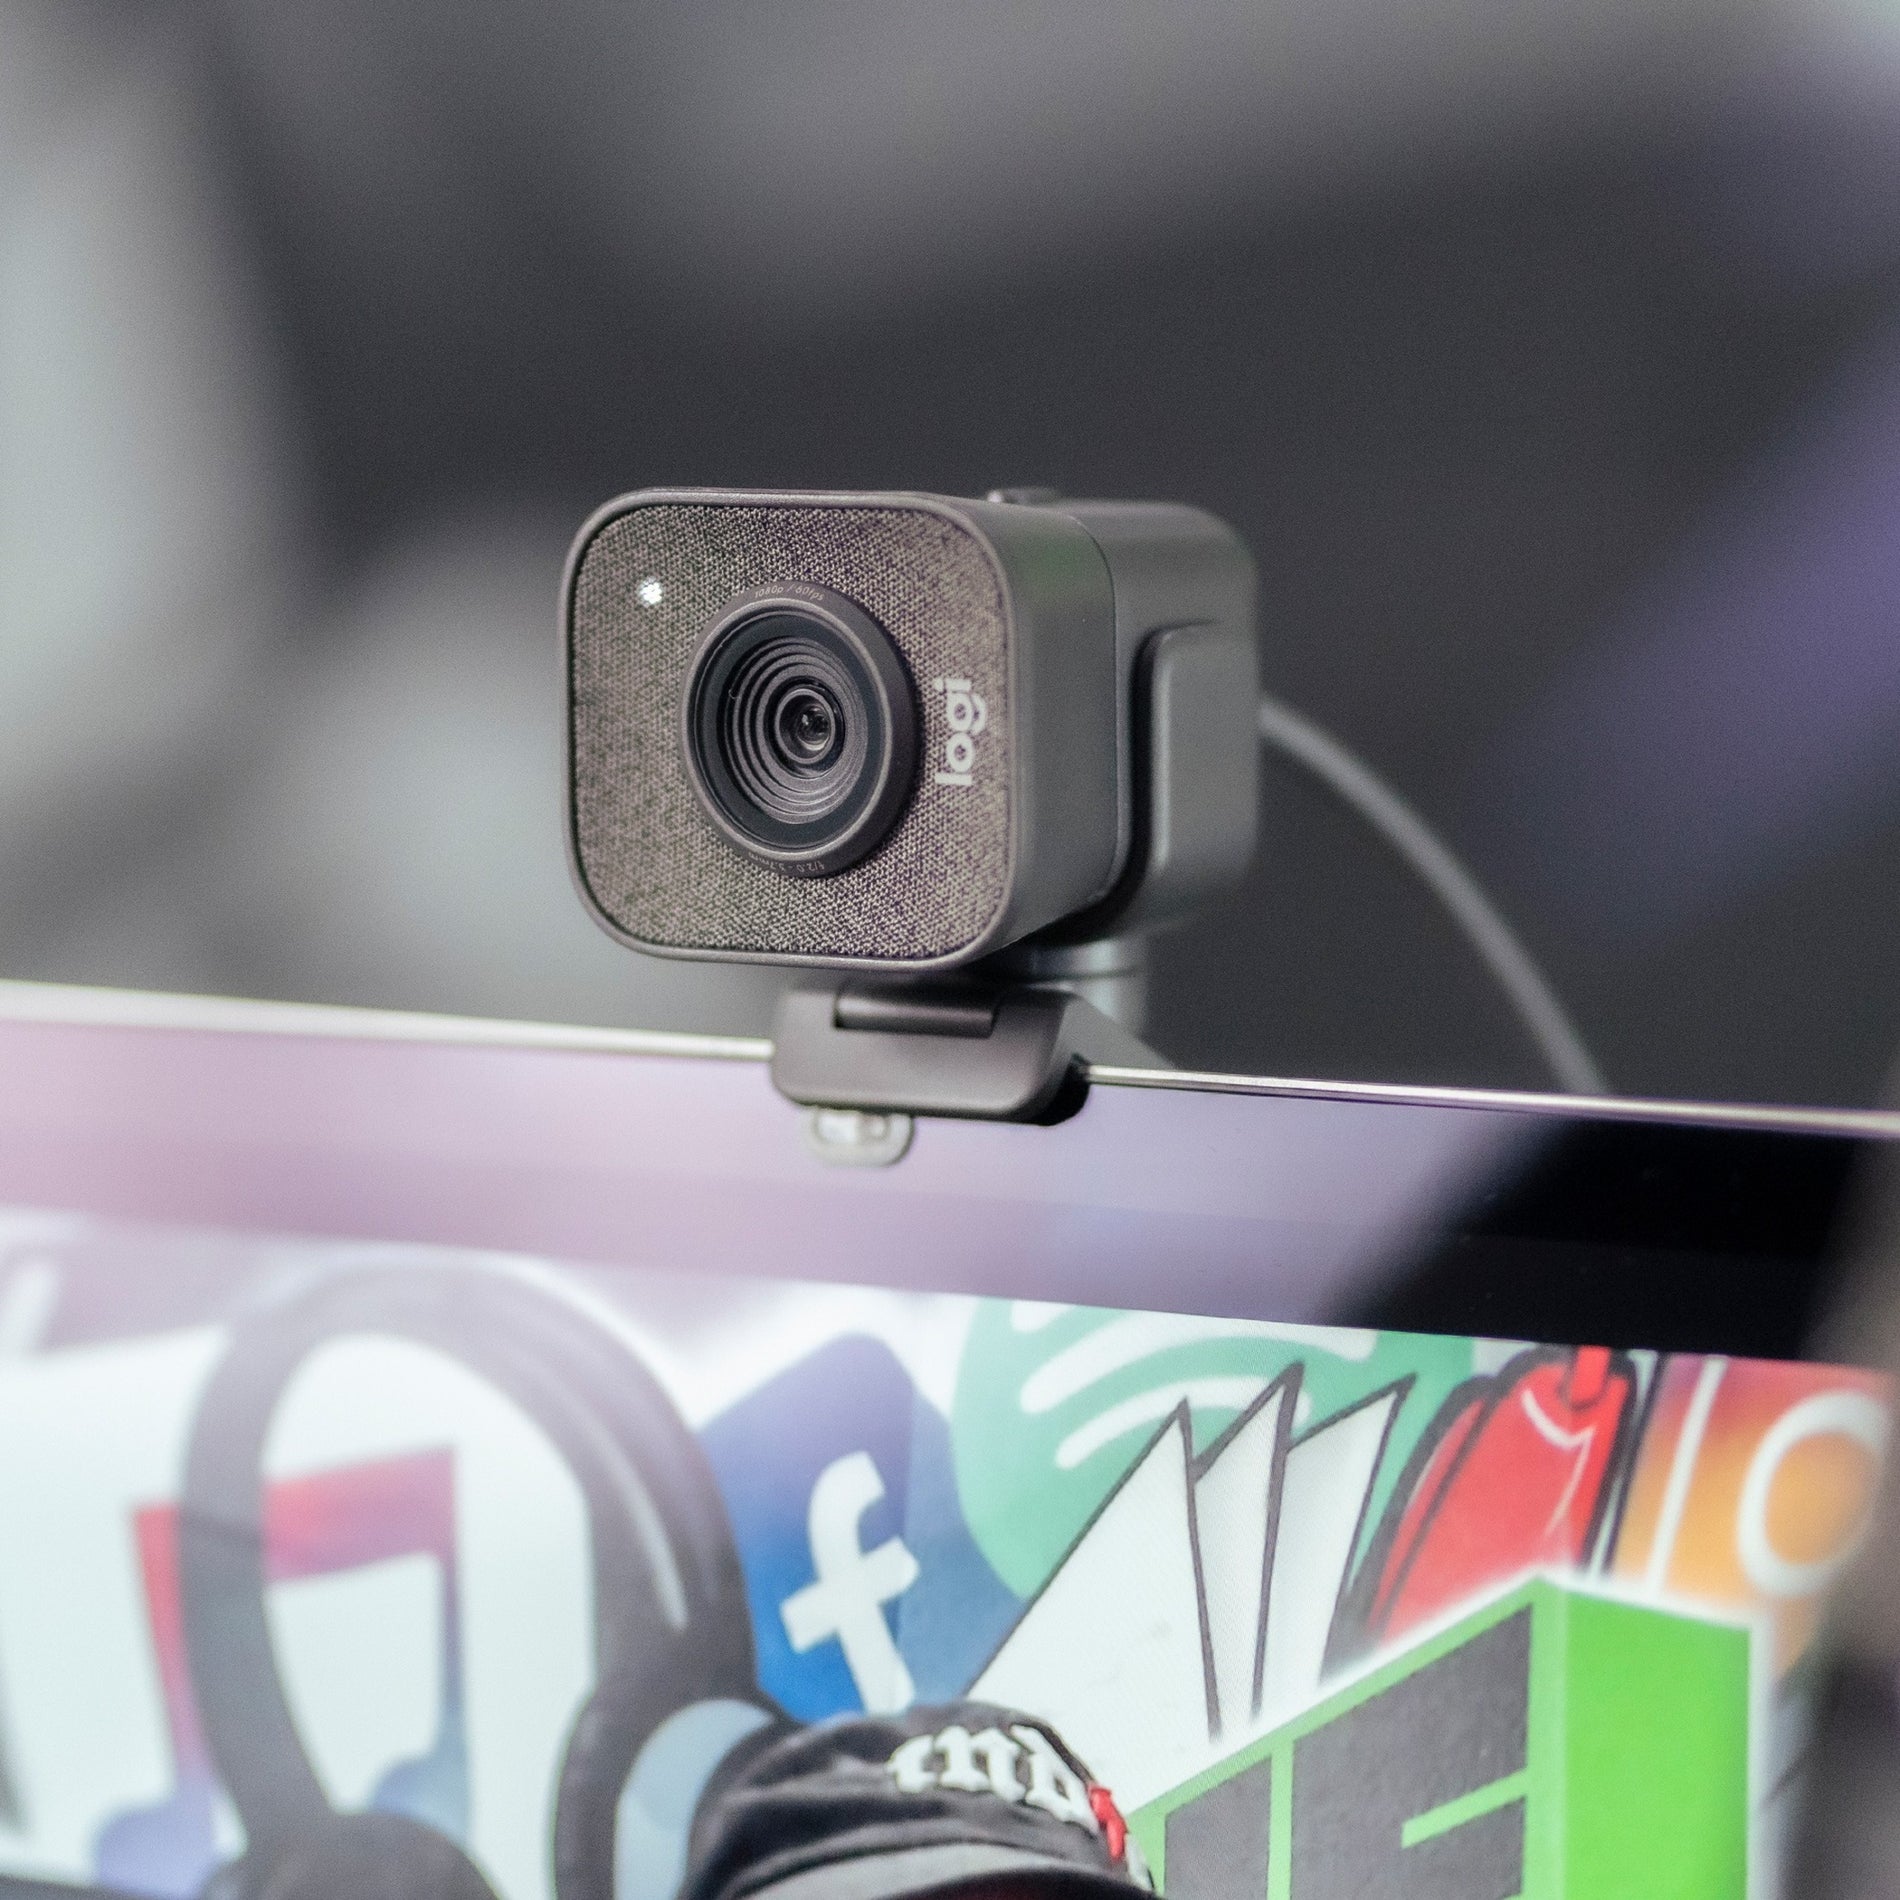 Logitech 960-001280 StreamCam Plus (Graphite), High-Definition Webcam with Auto-Focus, 60fps, 2.1 Megapixel